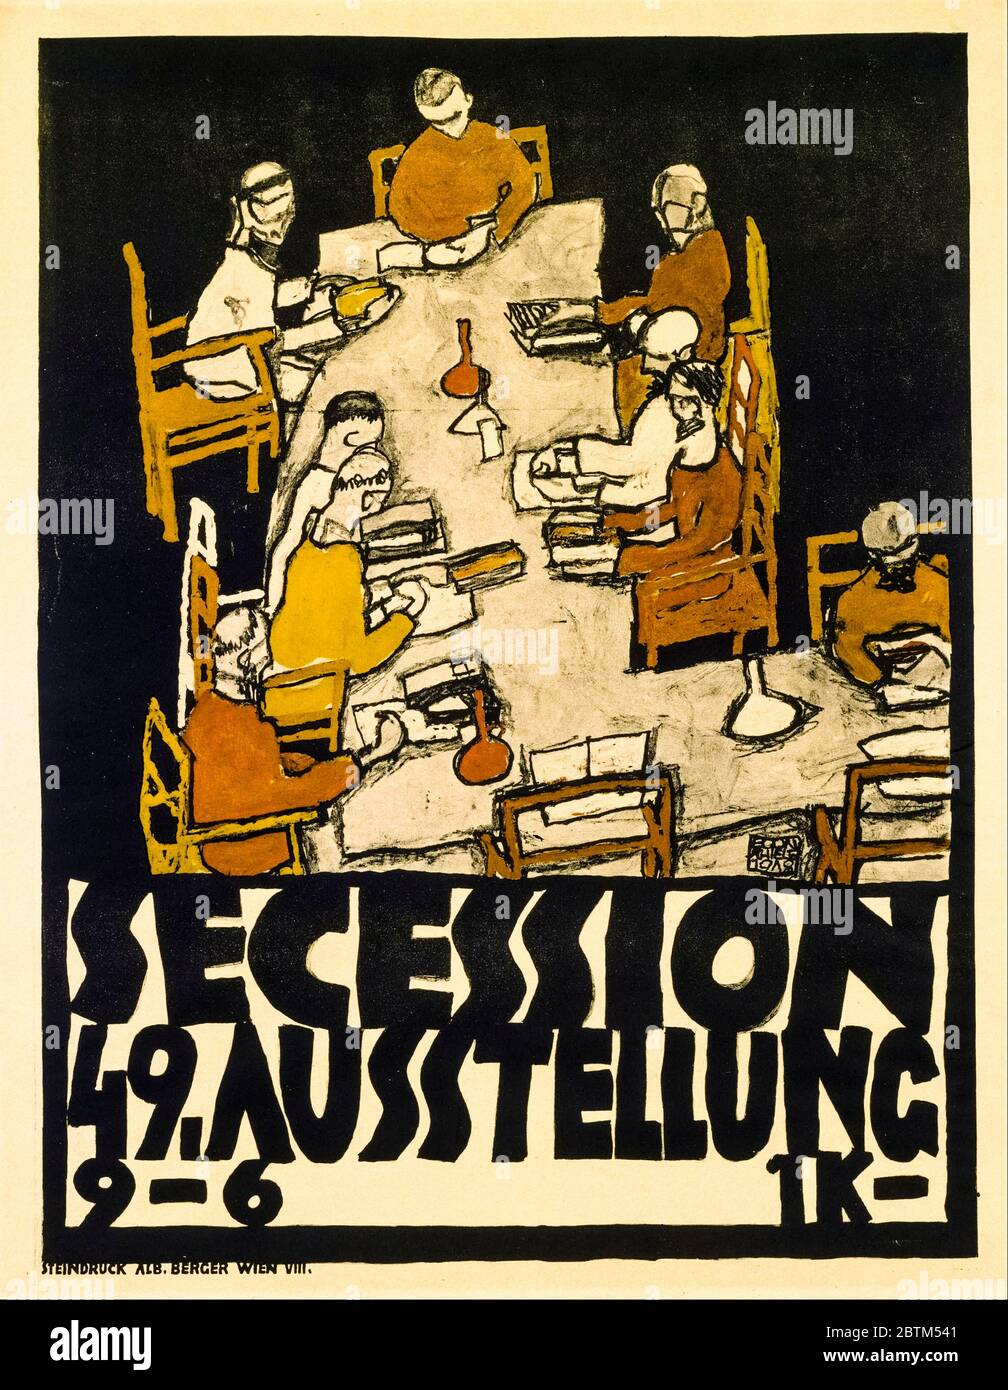 Egon Schiele, Secession 49, Exhibition, poster, 1918 Stock Photo